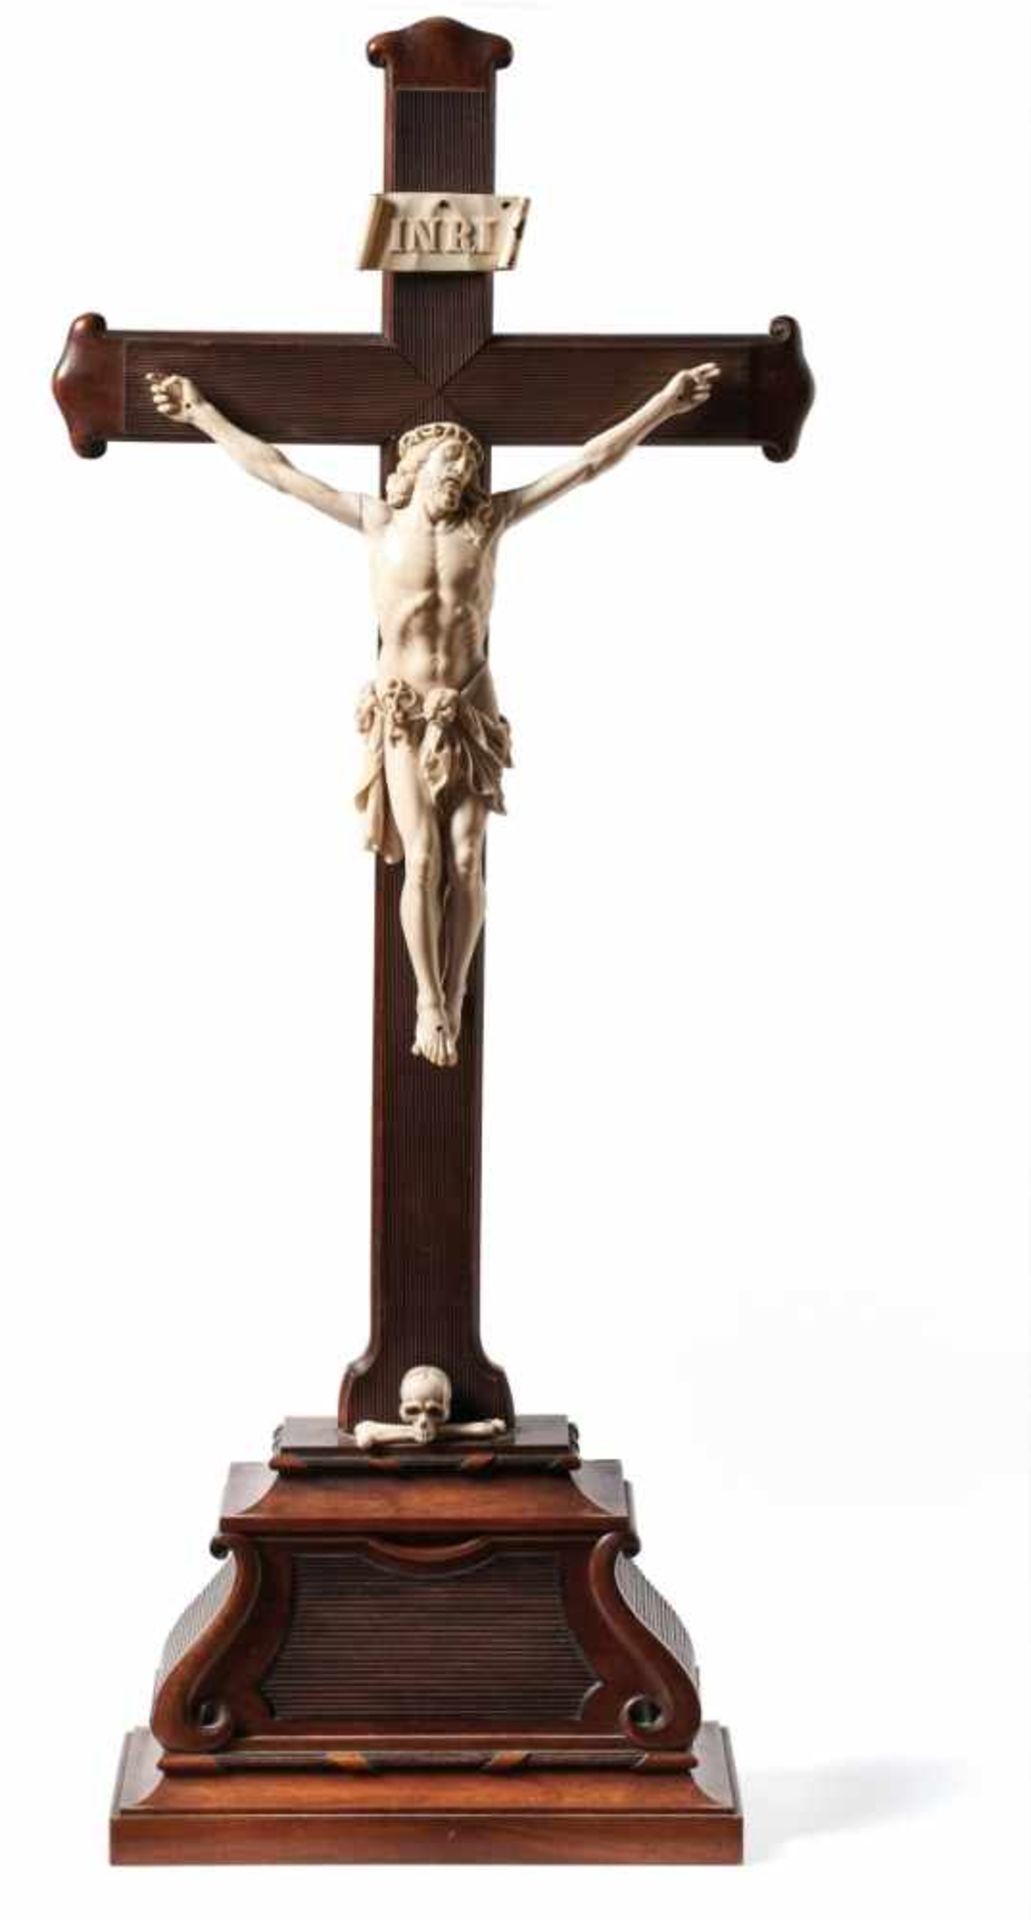 Standkruzifix19. Jh.Auf rechteckigem, profiliertem Sockel mit Volutenzier stehendes Kreuz mit